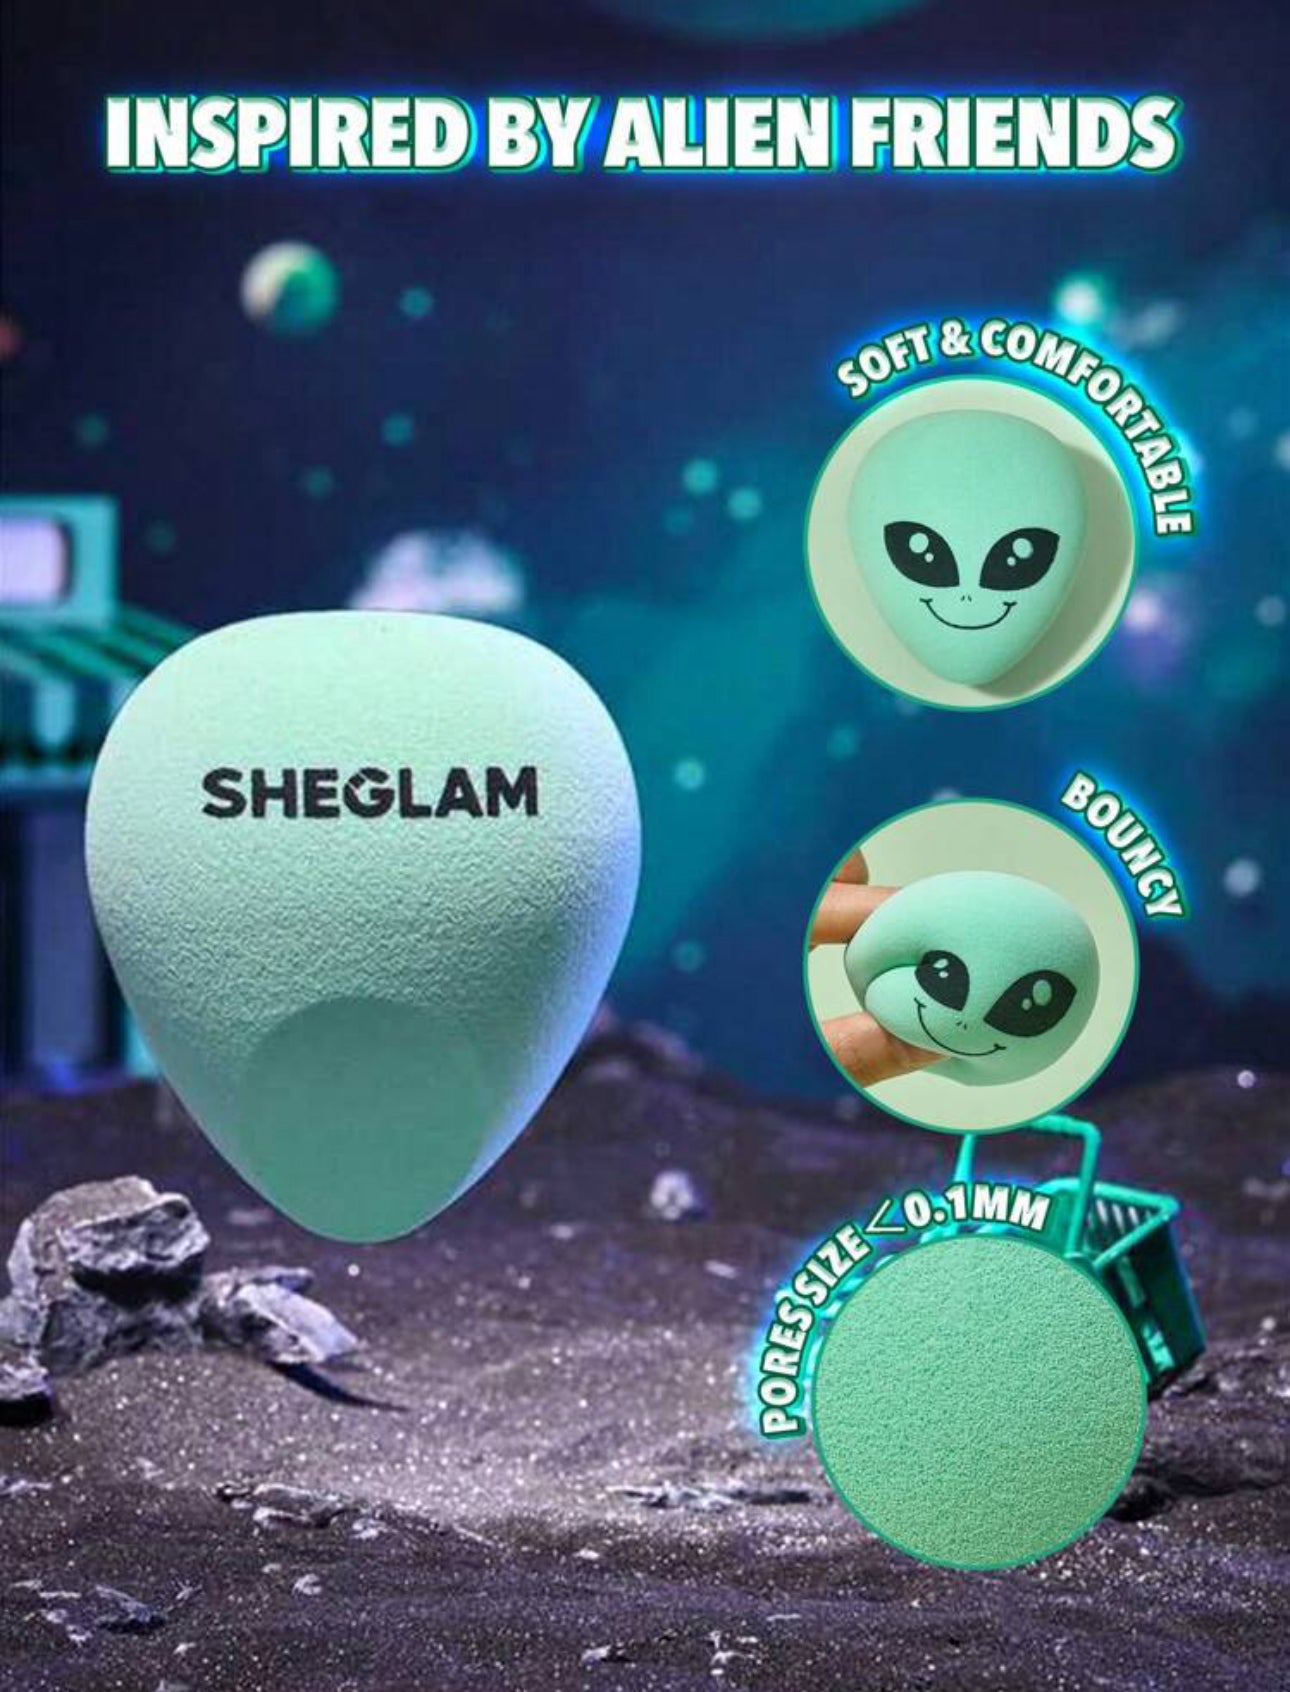 SHEGLAM Interstellar Beauty Sponge Alien Graphic Makeup Blending Sponge